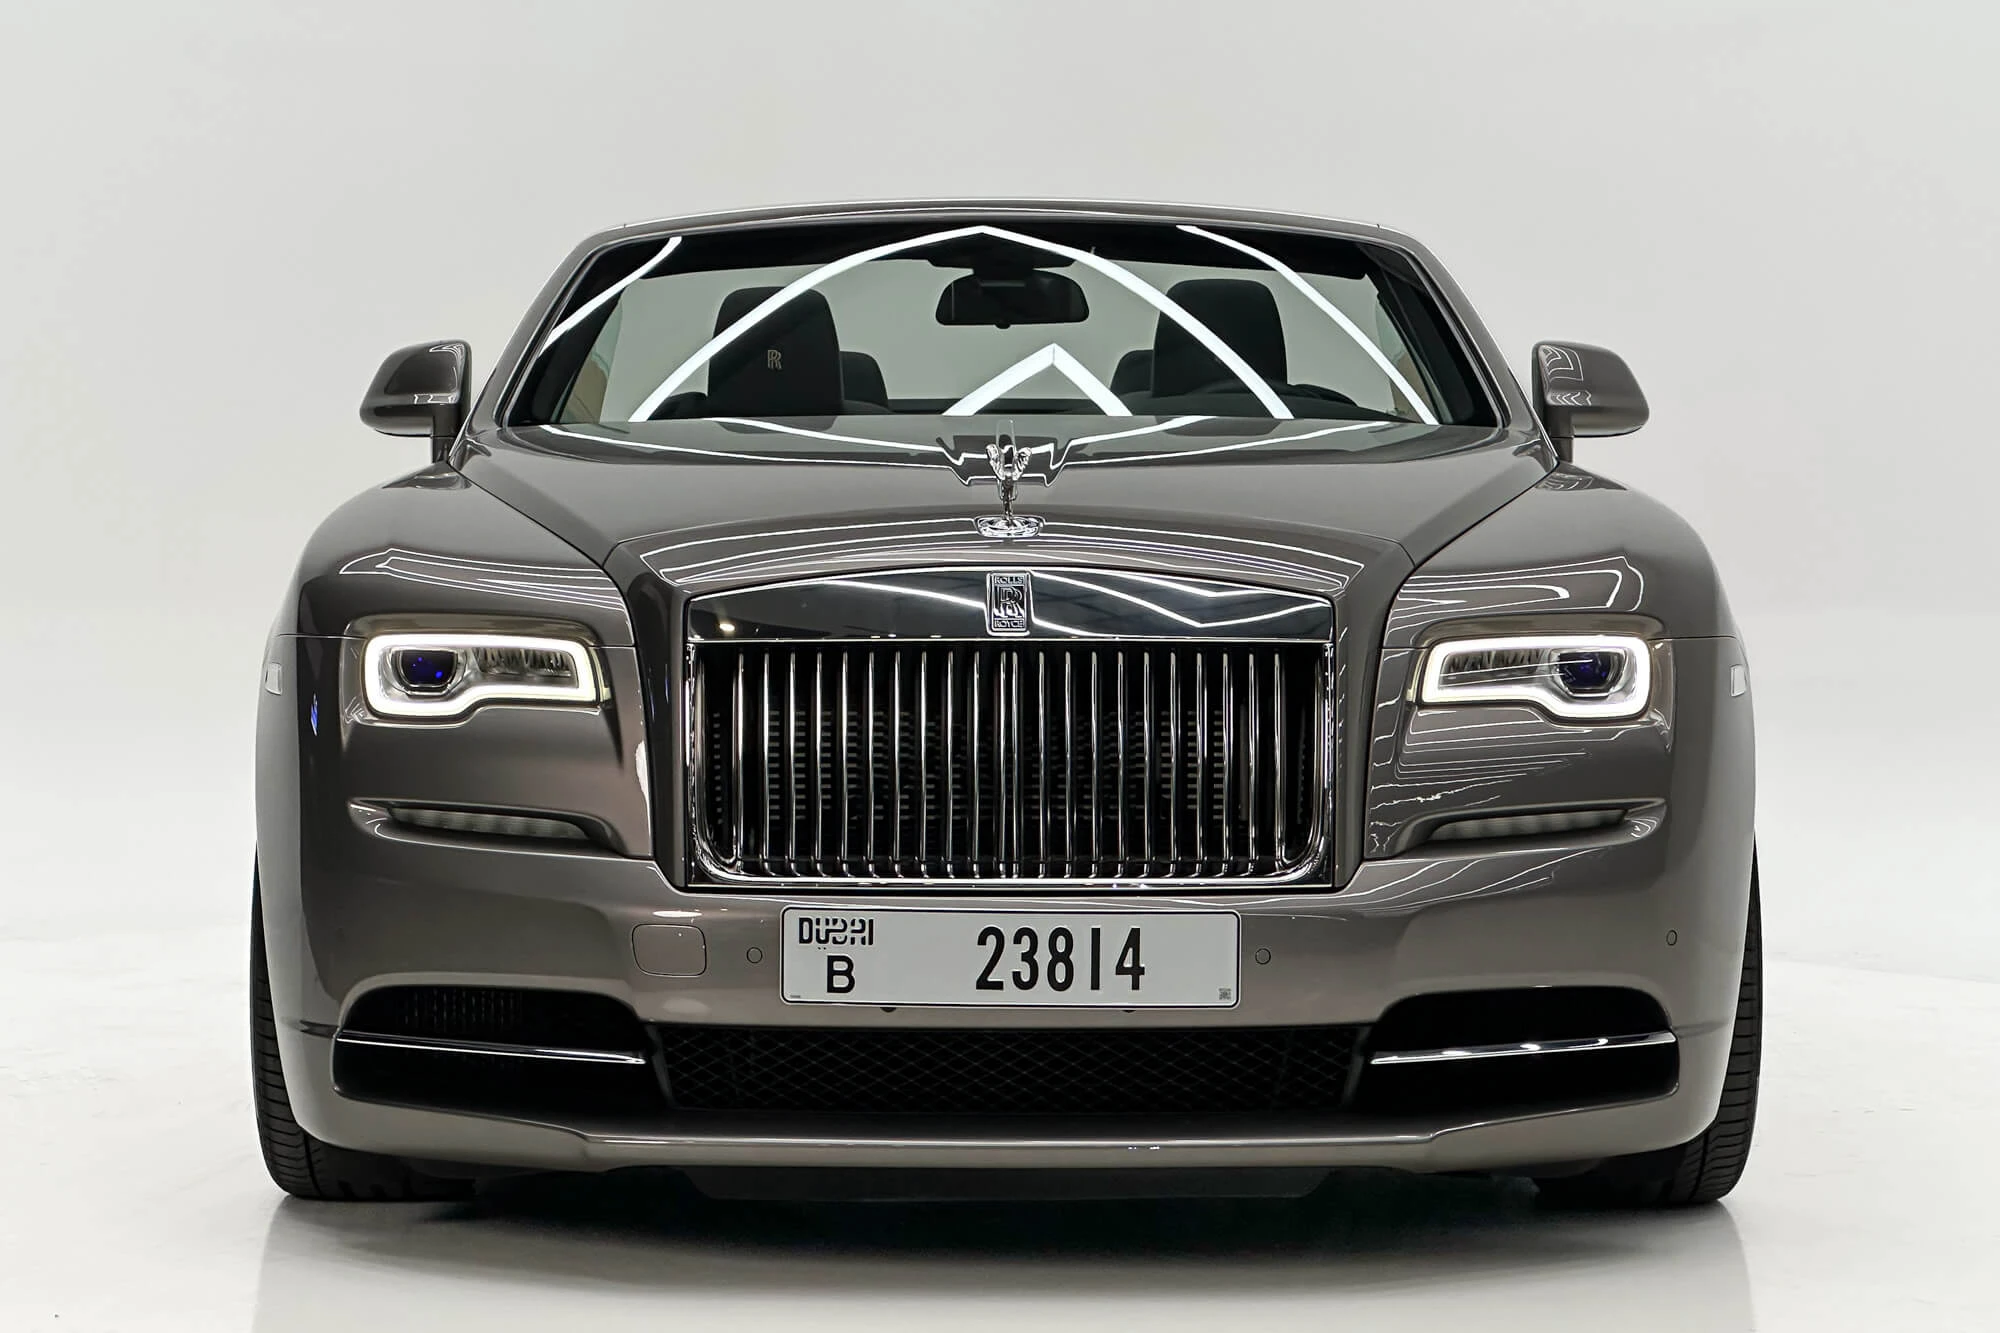 Rolls-Royce Dawn Grå